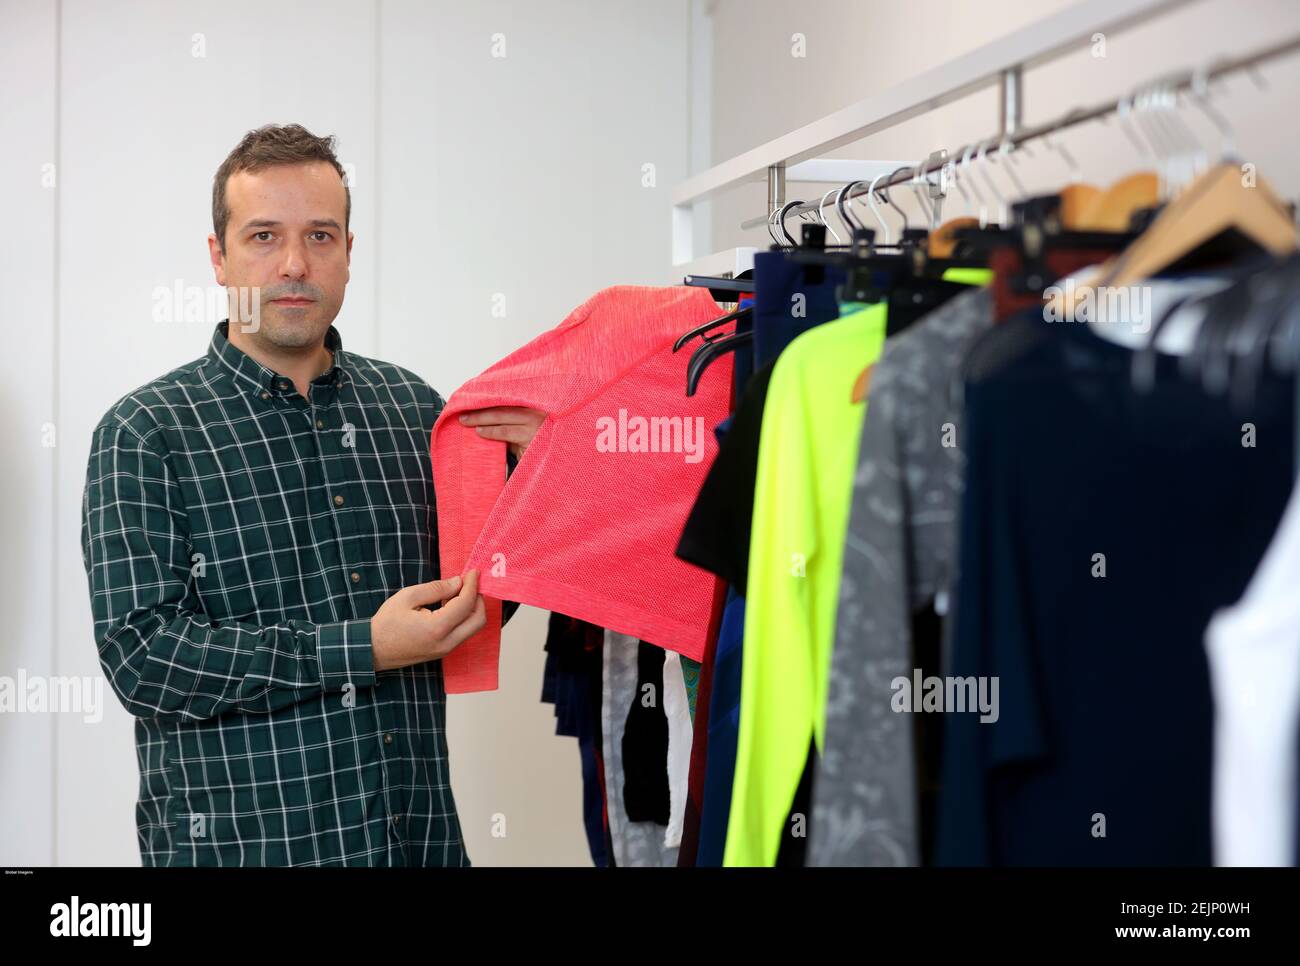 Barcelos, 02/27/2020 - la empresa Clothius ofrece líneas técnicas de ropa  para nichos como el deporte y la salud, que tendrán funcionalidades a  través del uso de nuevas materias primas, como hilos